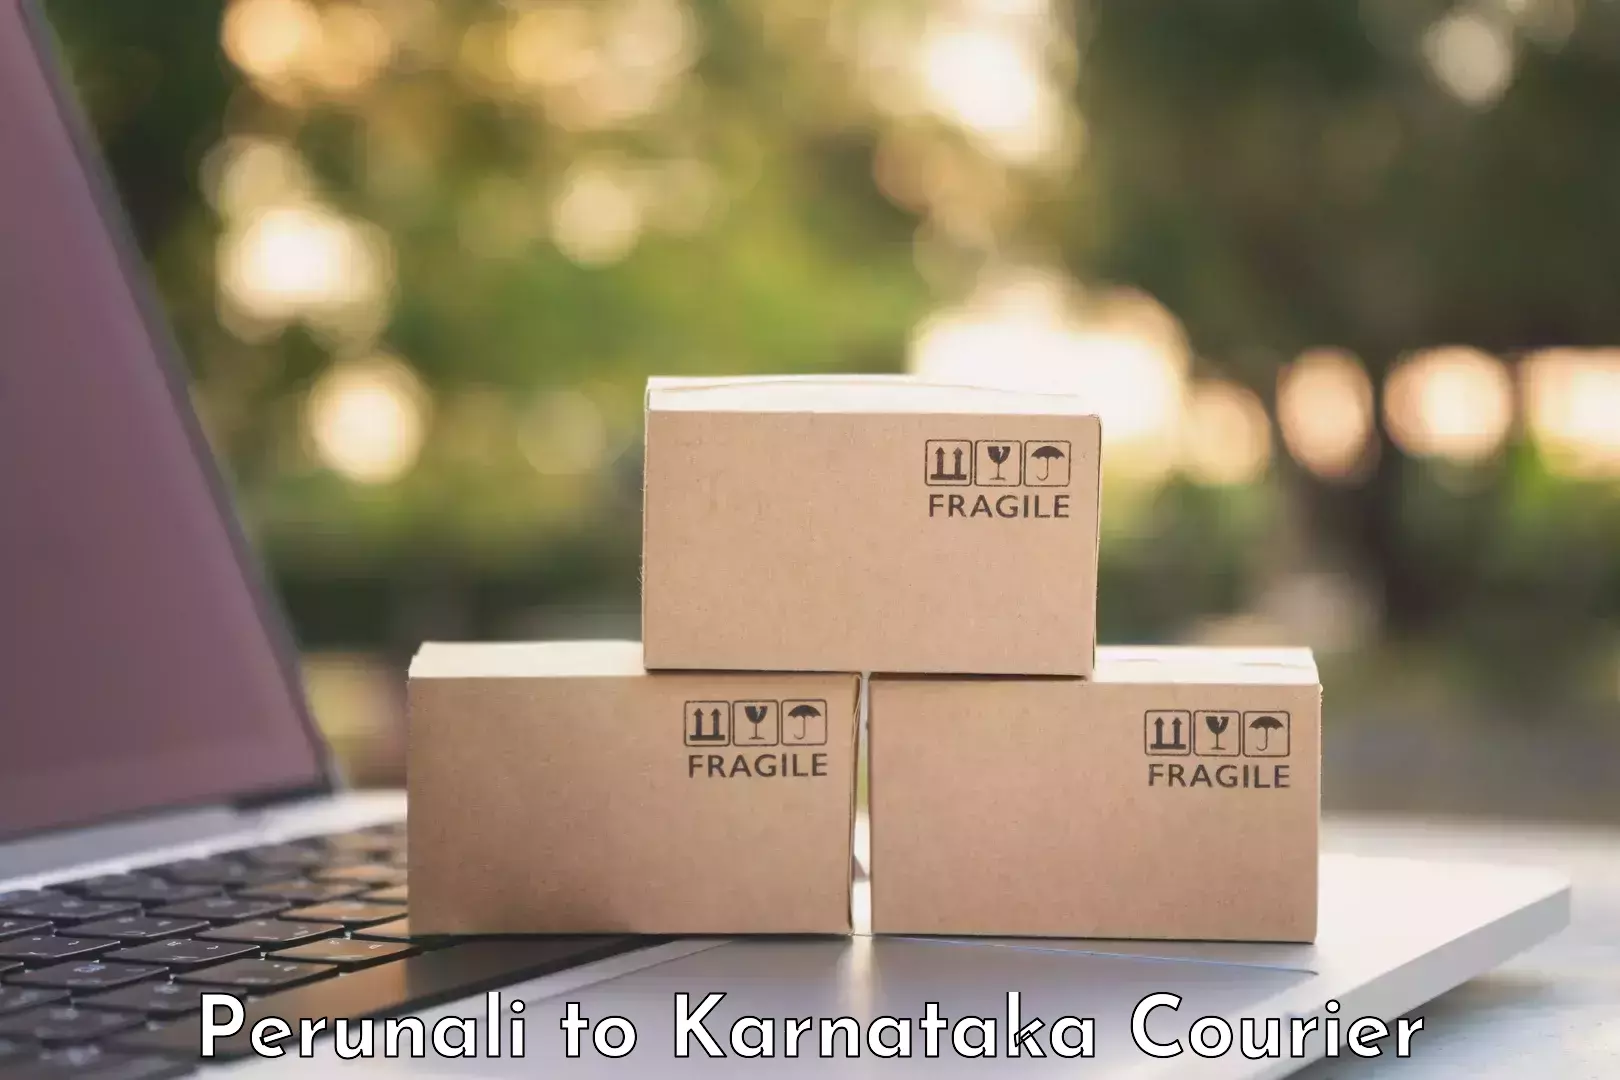 Global baggage shipping Perunali to Karnataka